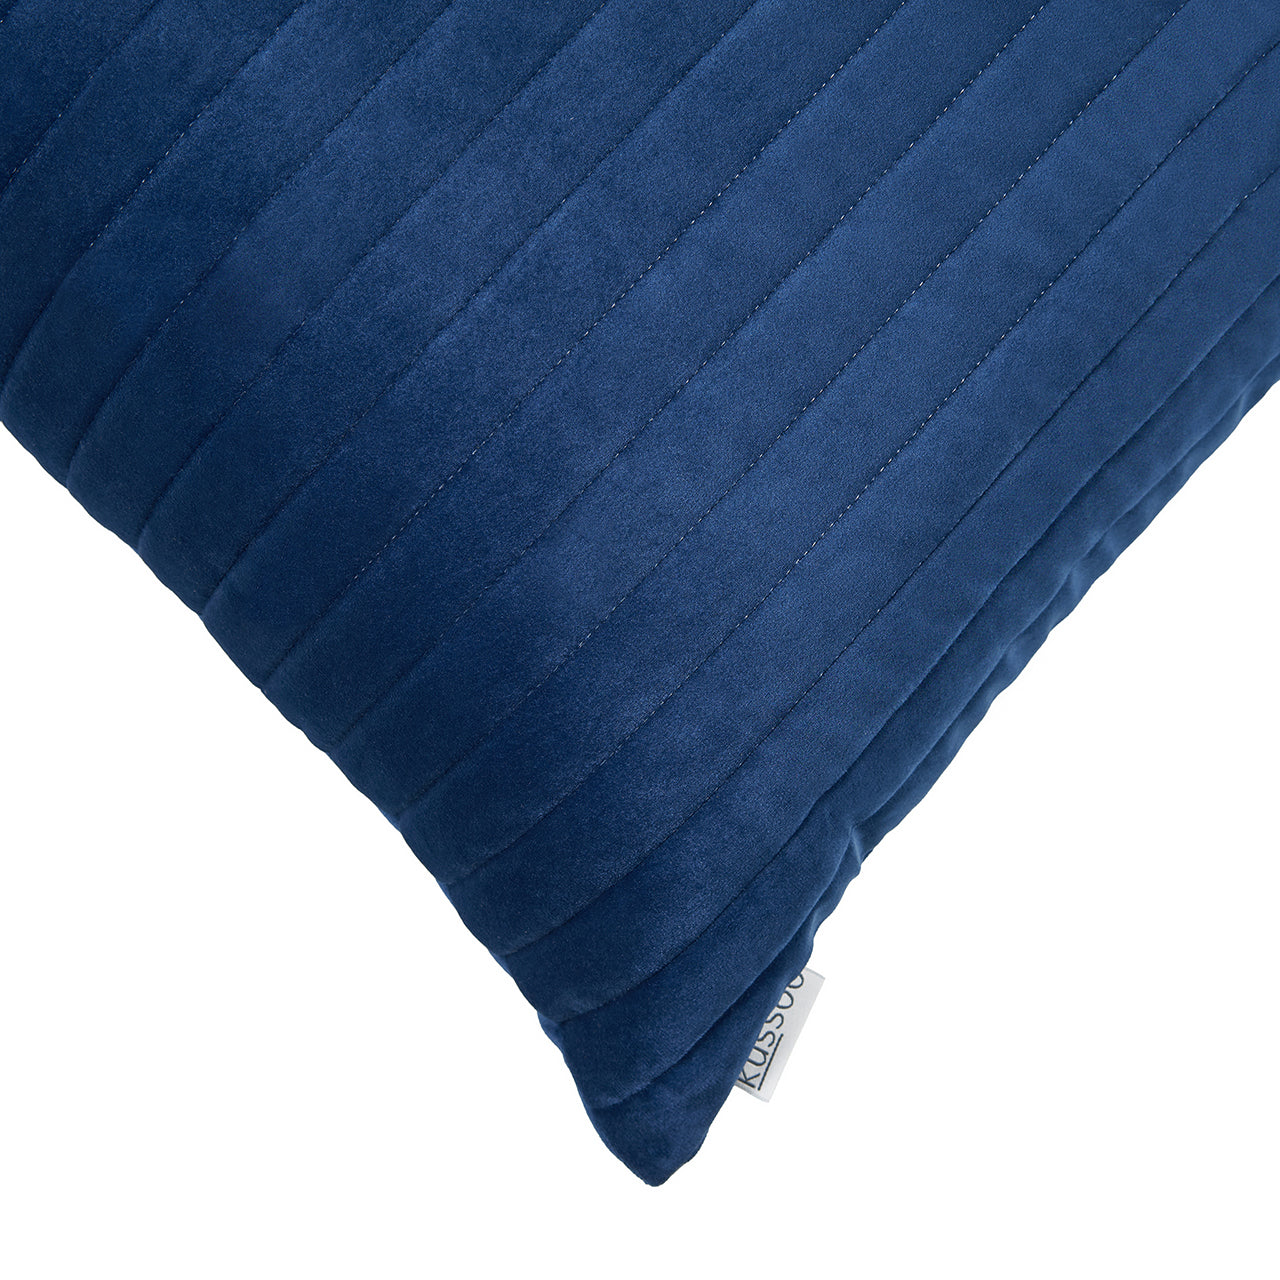 Kussen-fluweel-indigo-blauw-streep-detail